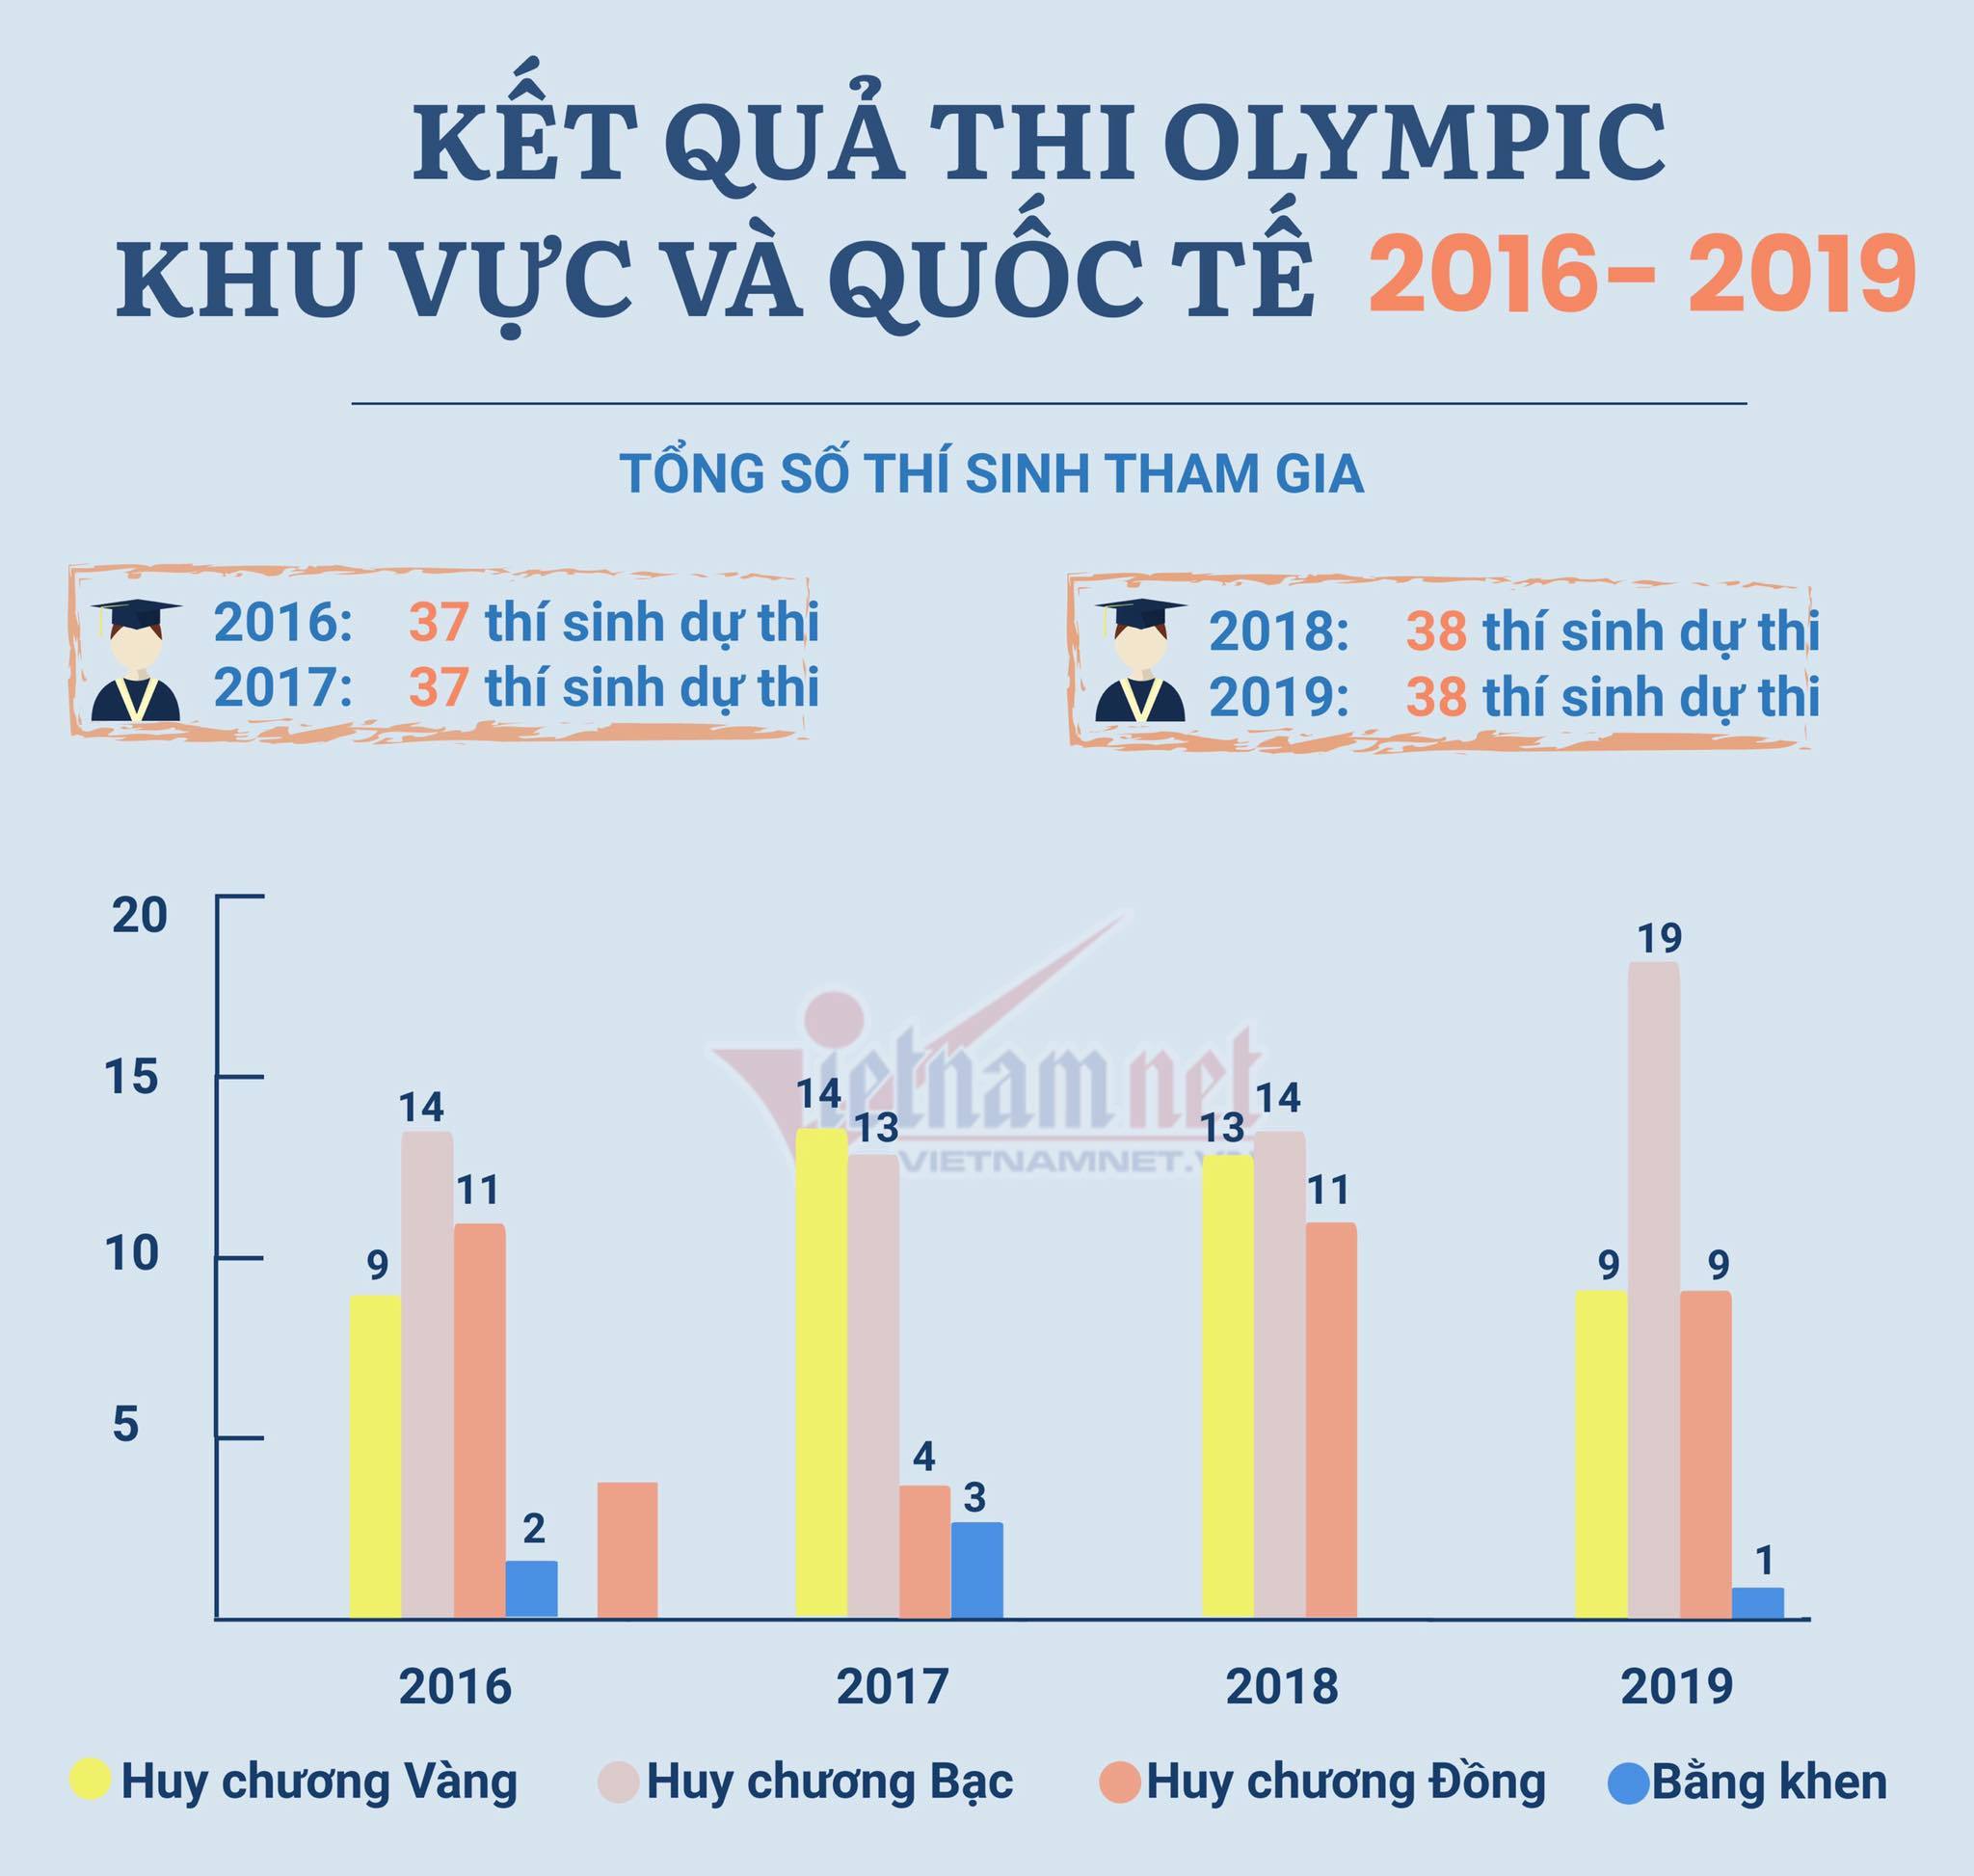 Thành tích của học sinh Việt Nam qua các kỳ Olympic quốc tế gần đây